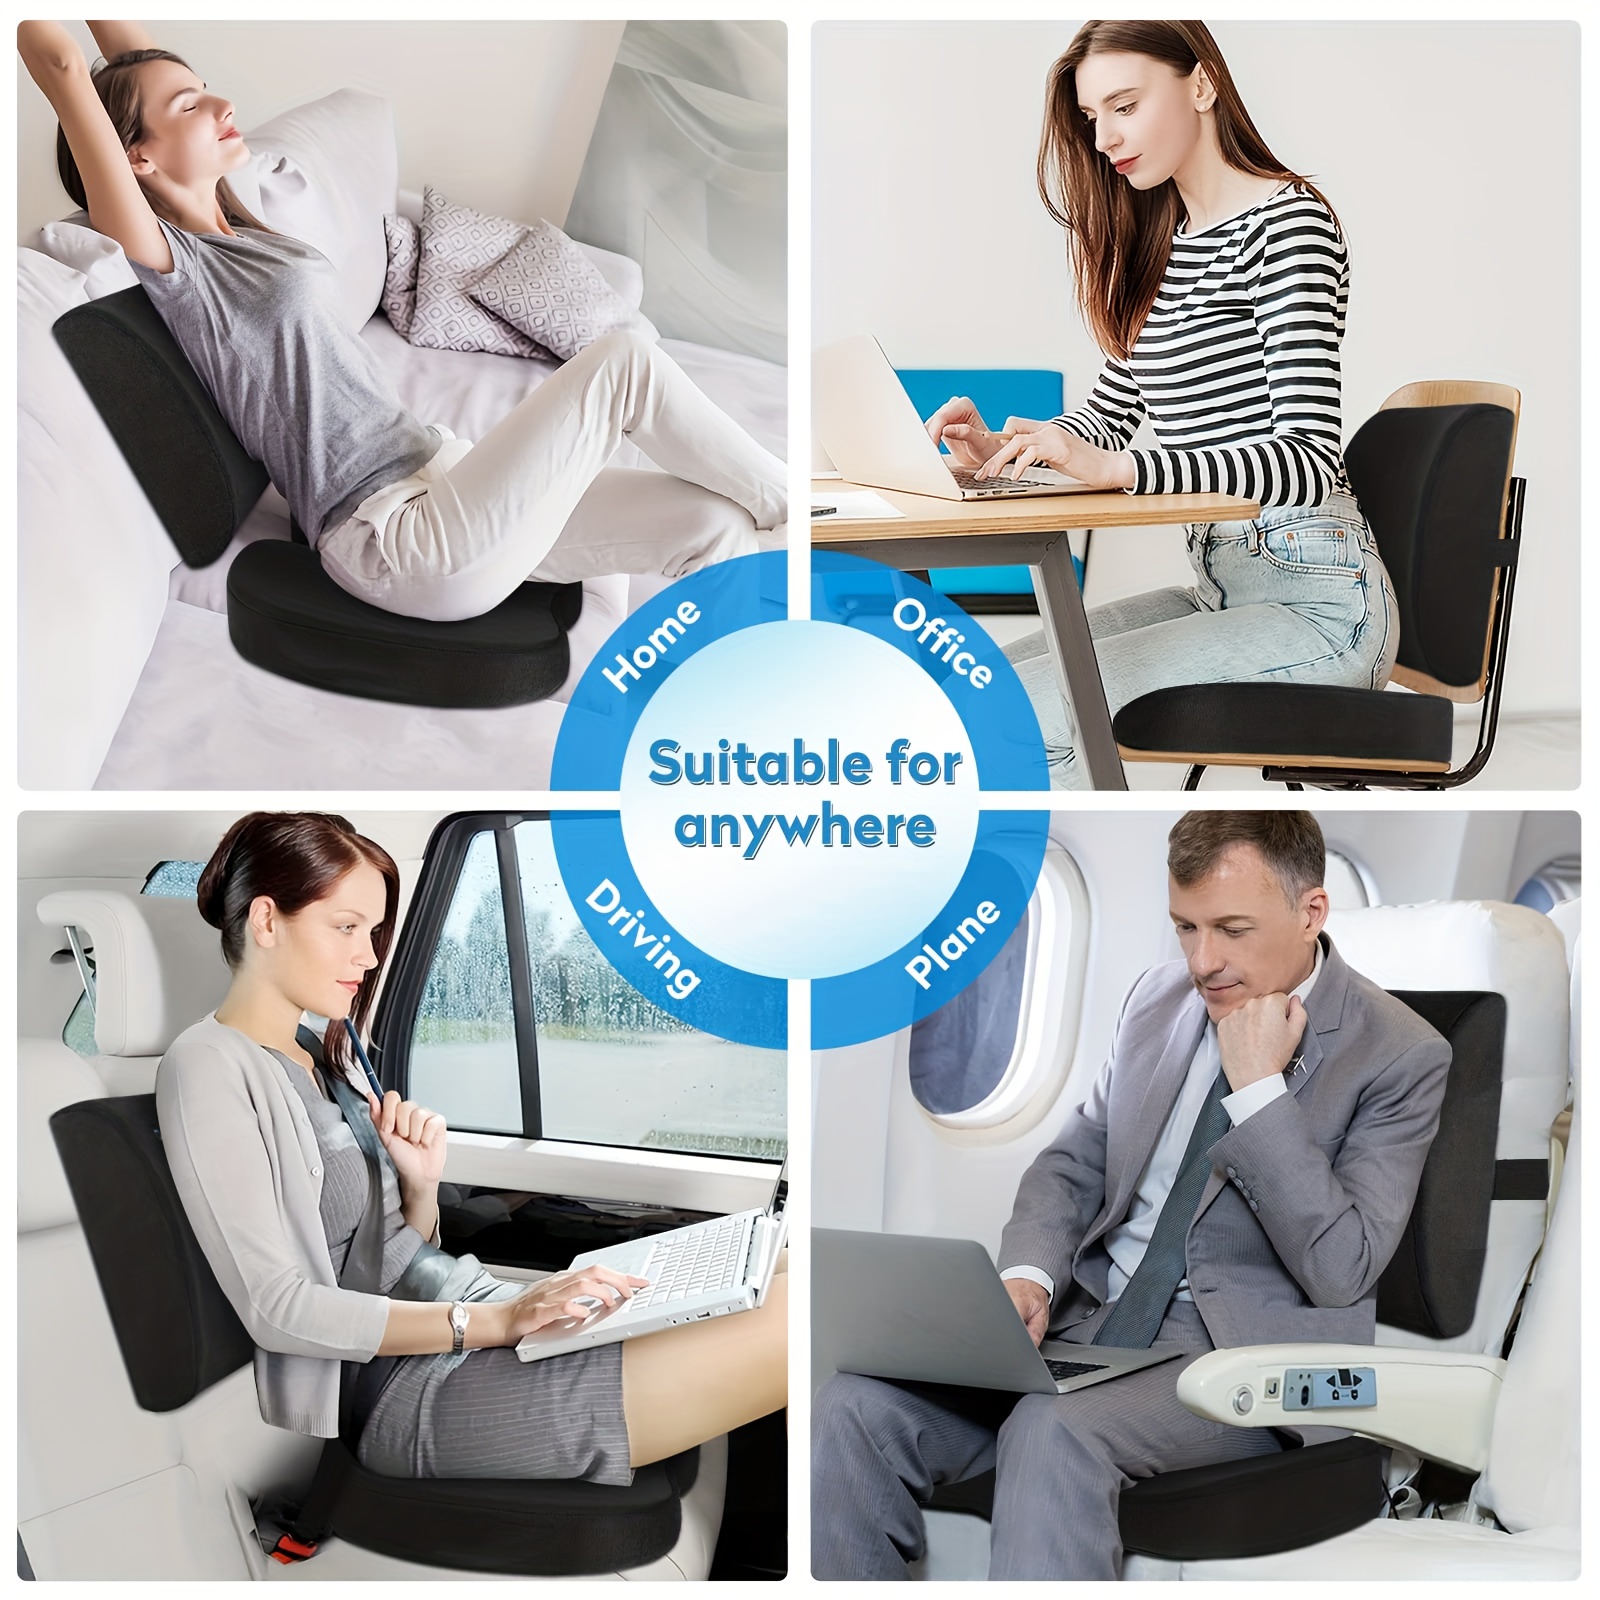 Sheepskin Tush-Cush ® Orthopedic Seat Cushion